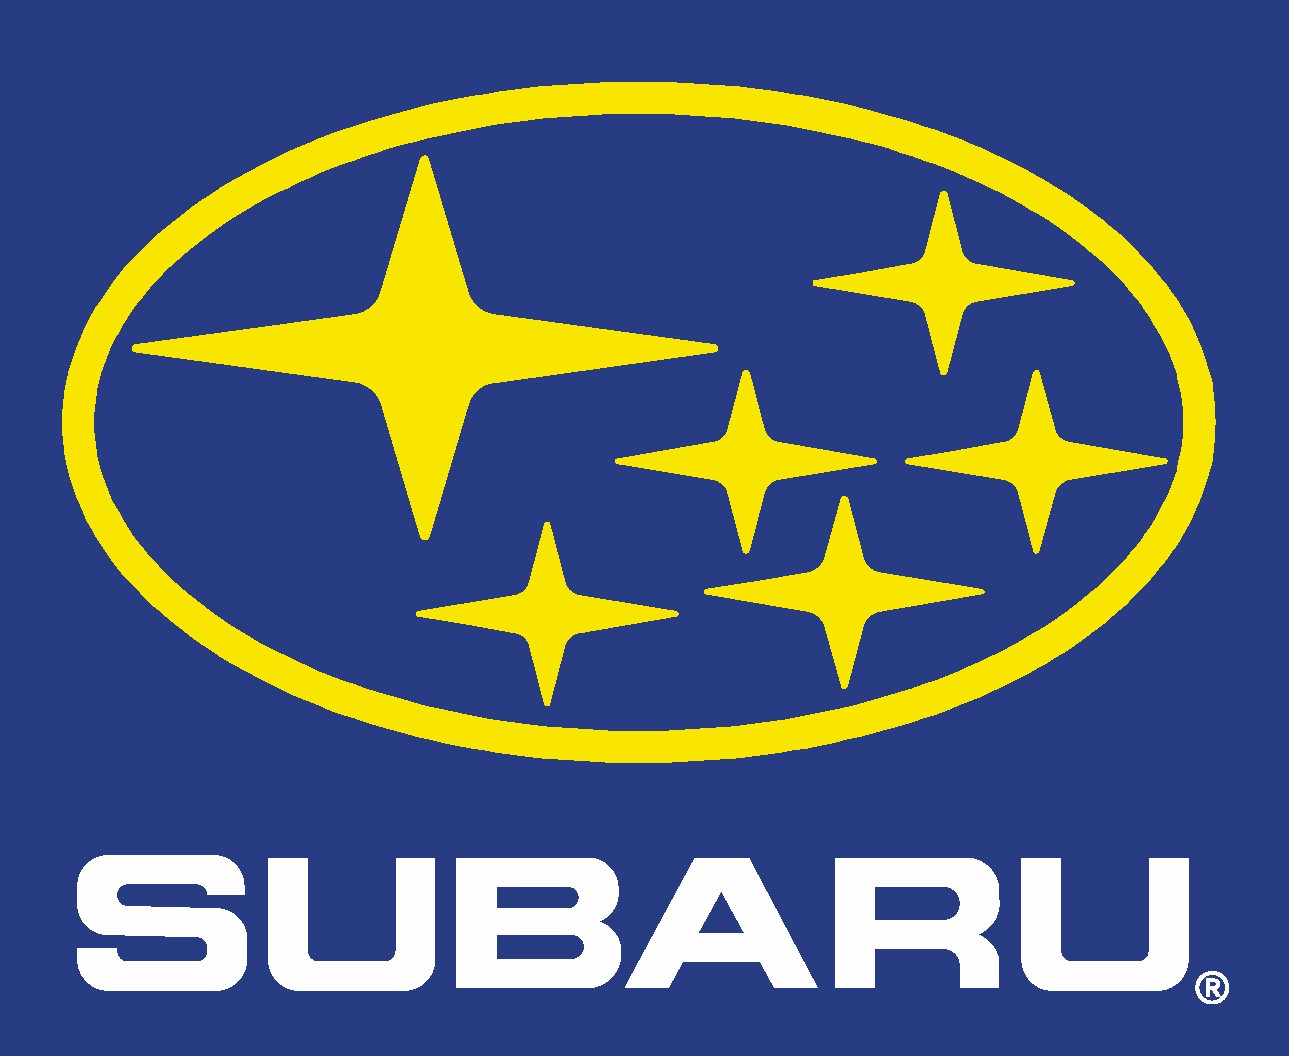 Yellow subaru logo on blue background